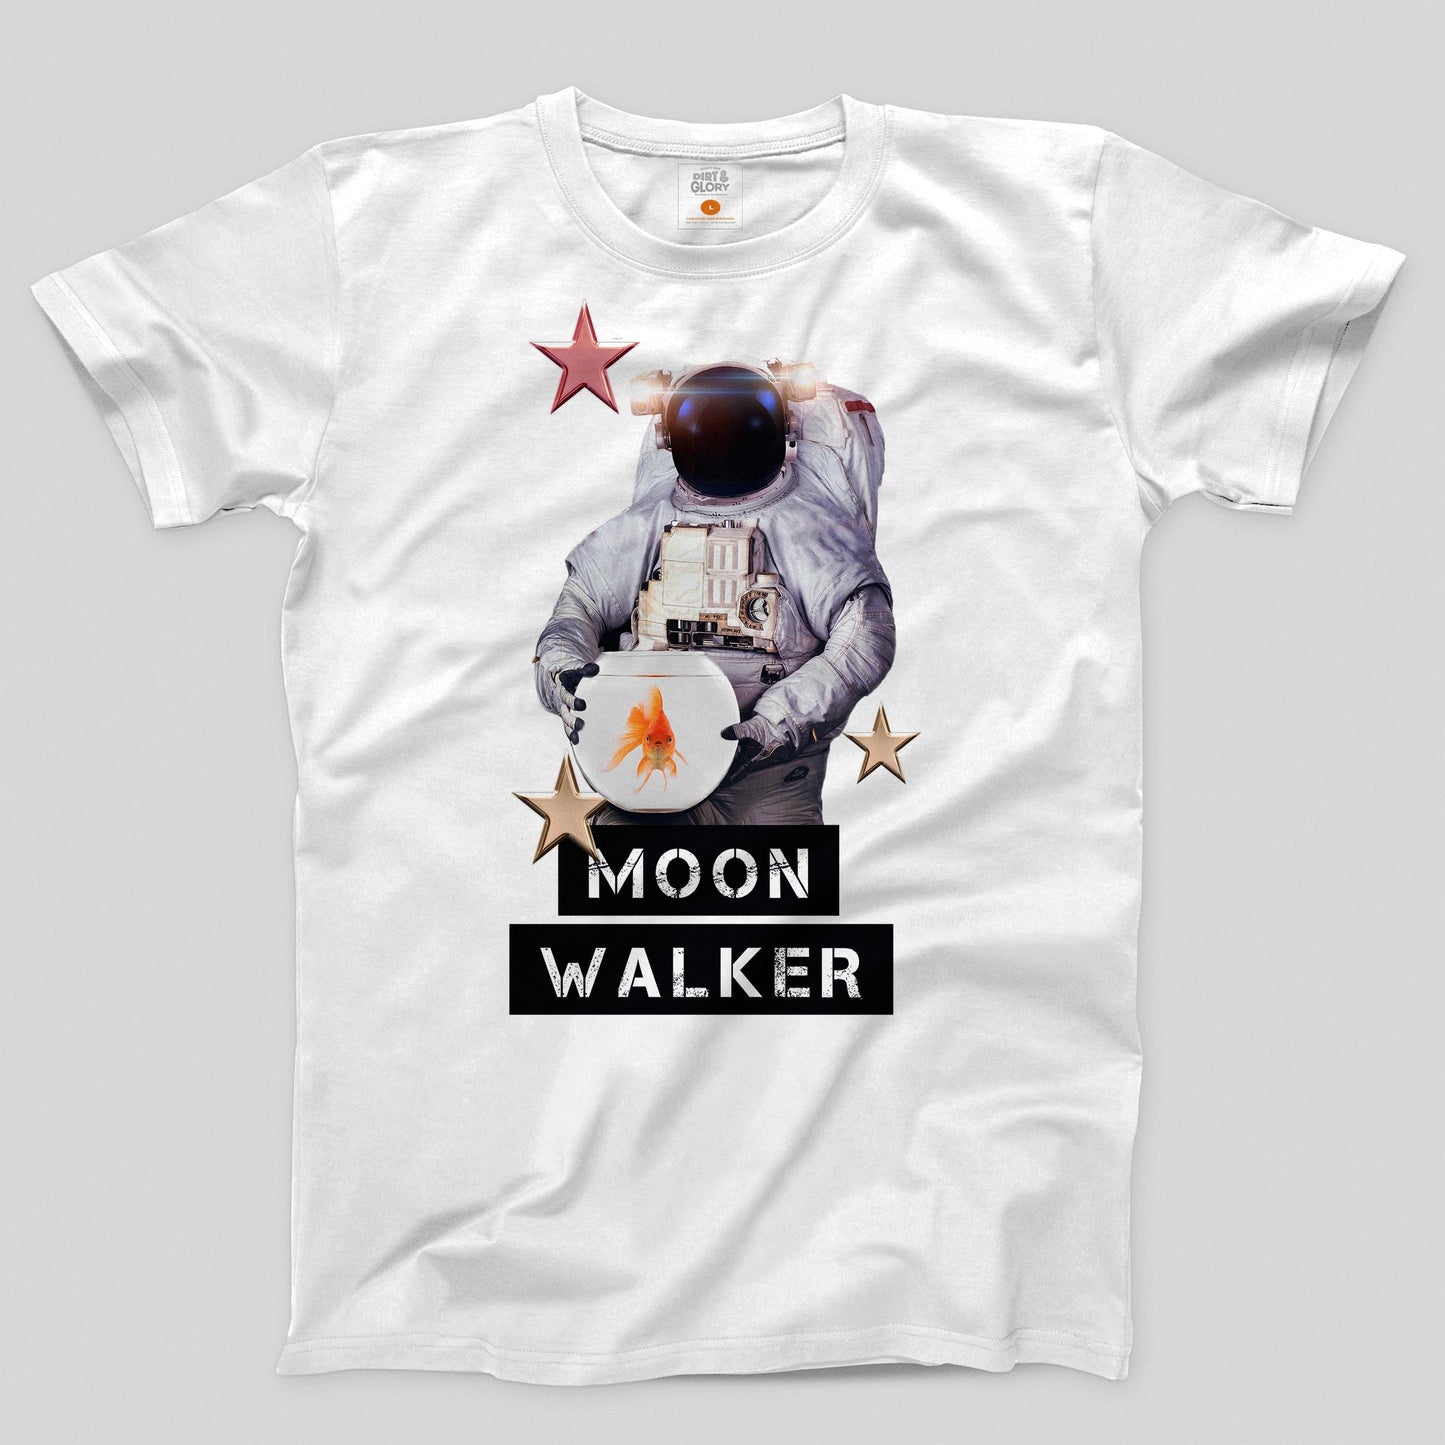 Moon Walker - Men's/Unisex T-shirt T-shirt by DIRT & GLORY